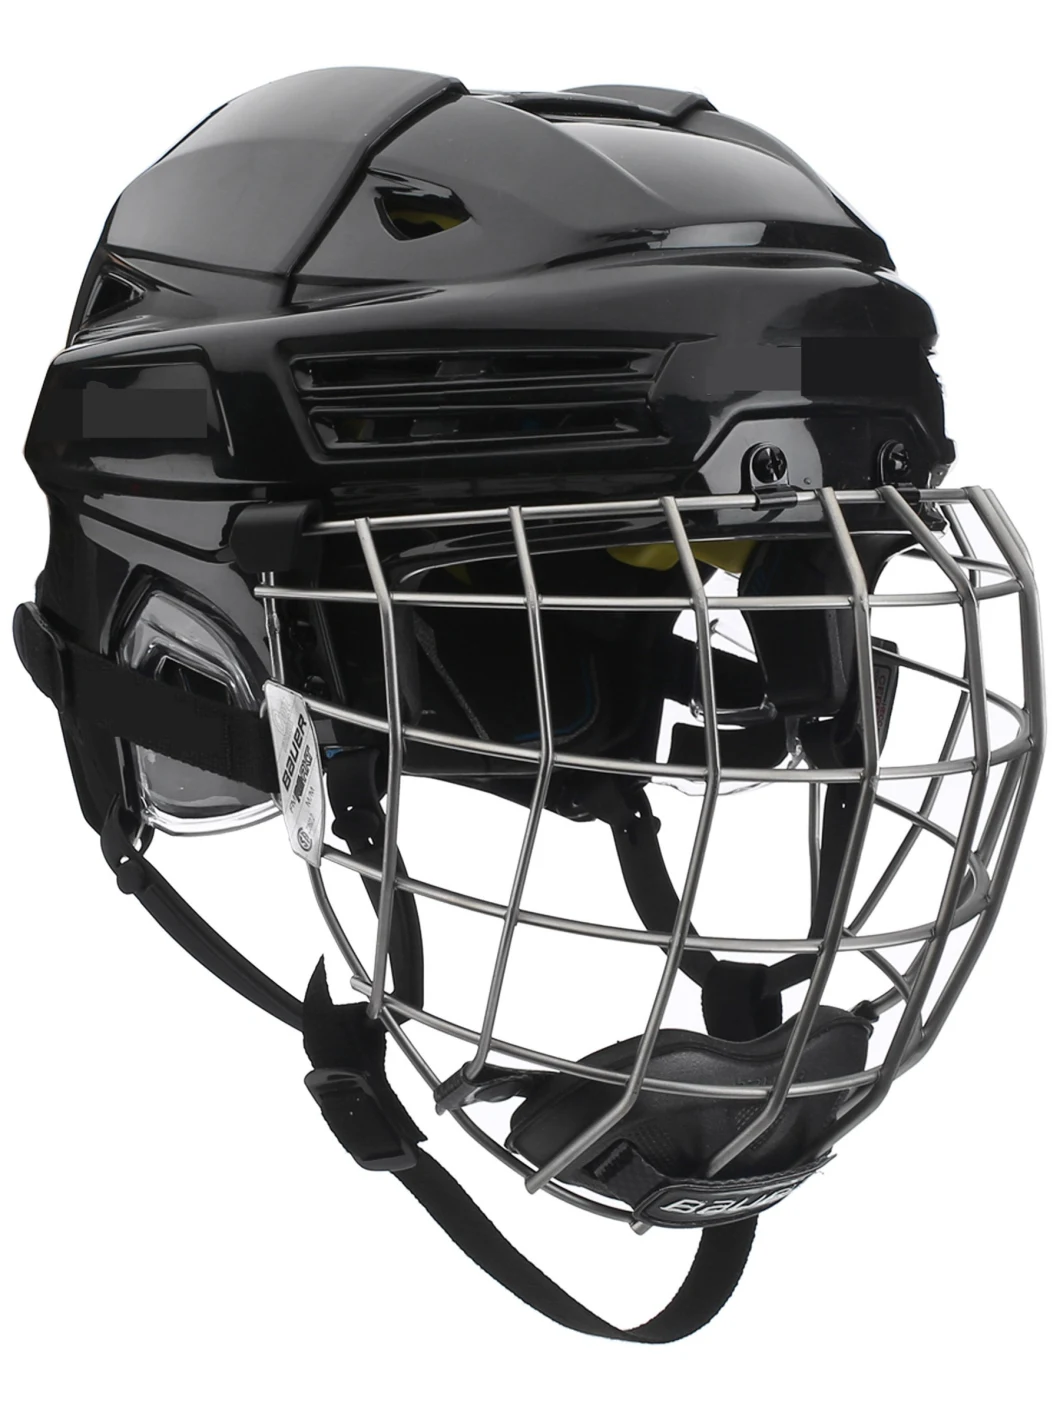 Ice Hockey Equipment Hockey Helmet Ice Sticks Hockey Protective Gear